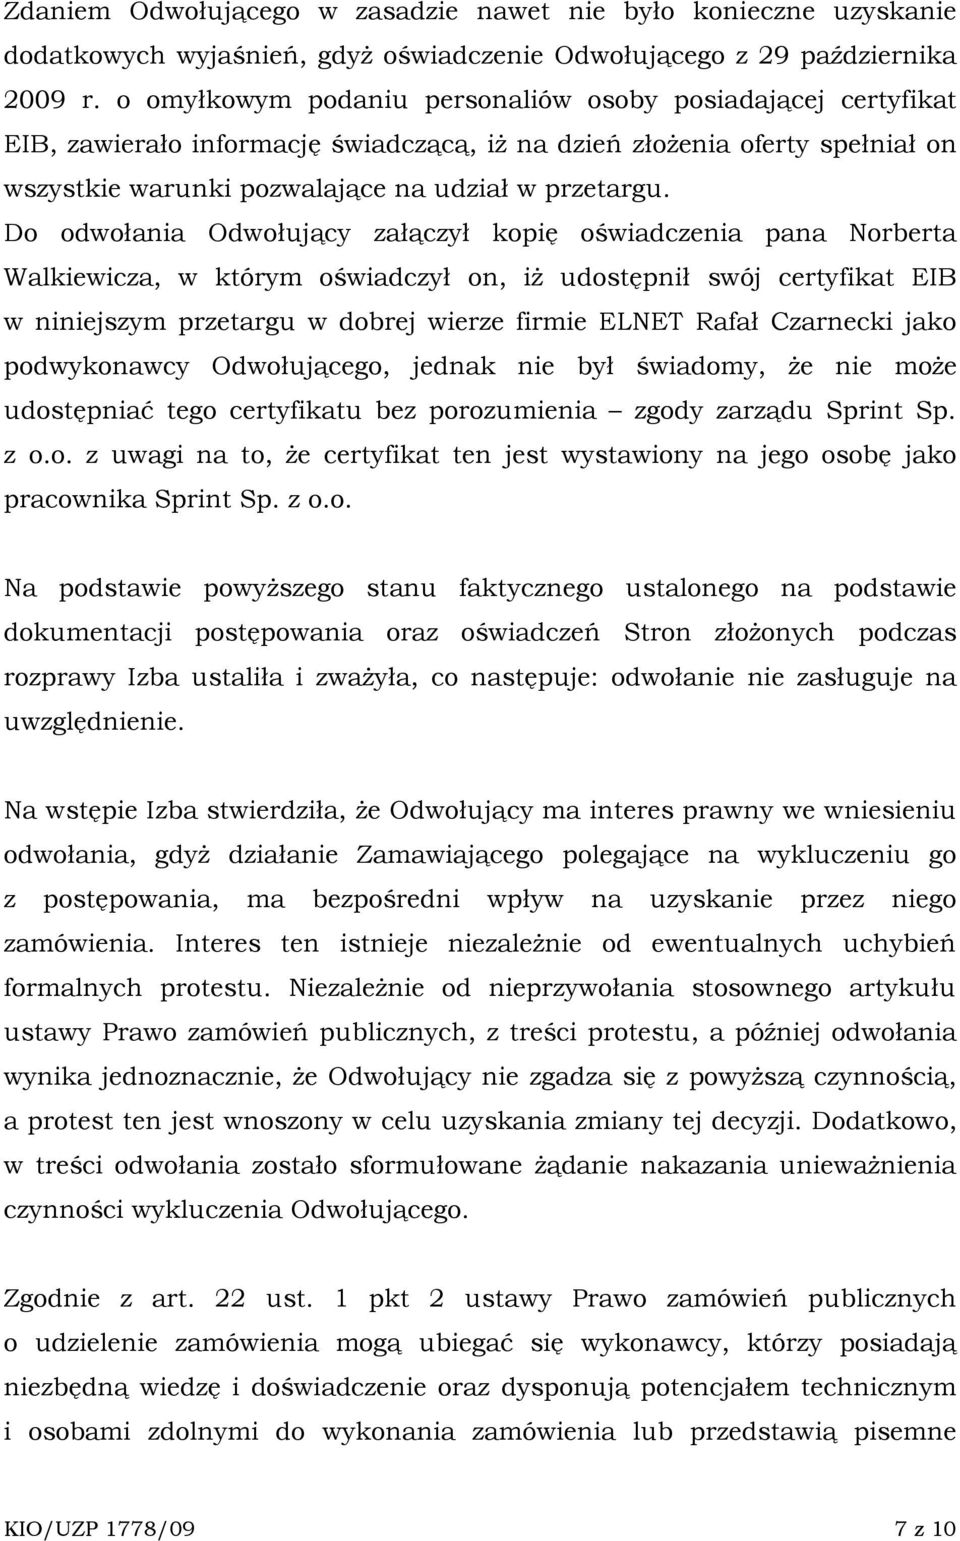 Do odwołania Odwołujący załączył kopię oświadczenia pana Norberta Walkiewicza, w którym oświadczył on, iŝ udostępnił swój certyfikat EIB w niniejszym przetargu w dobrej wierze firmie ELNET Rafał